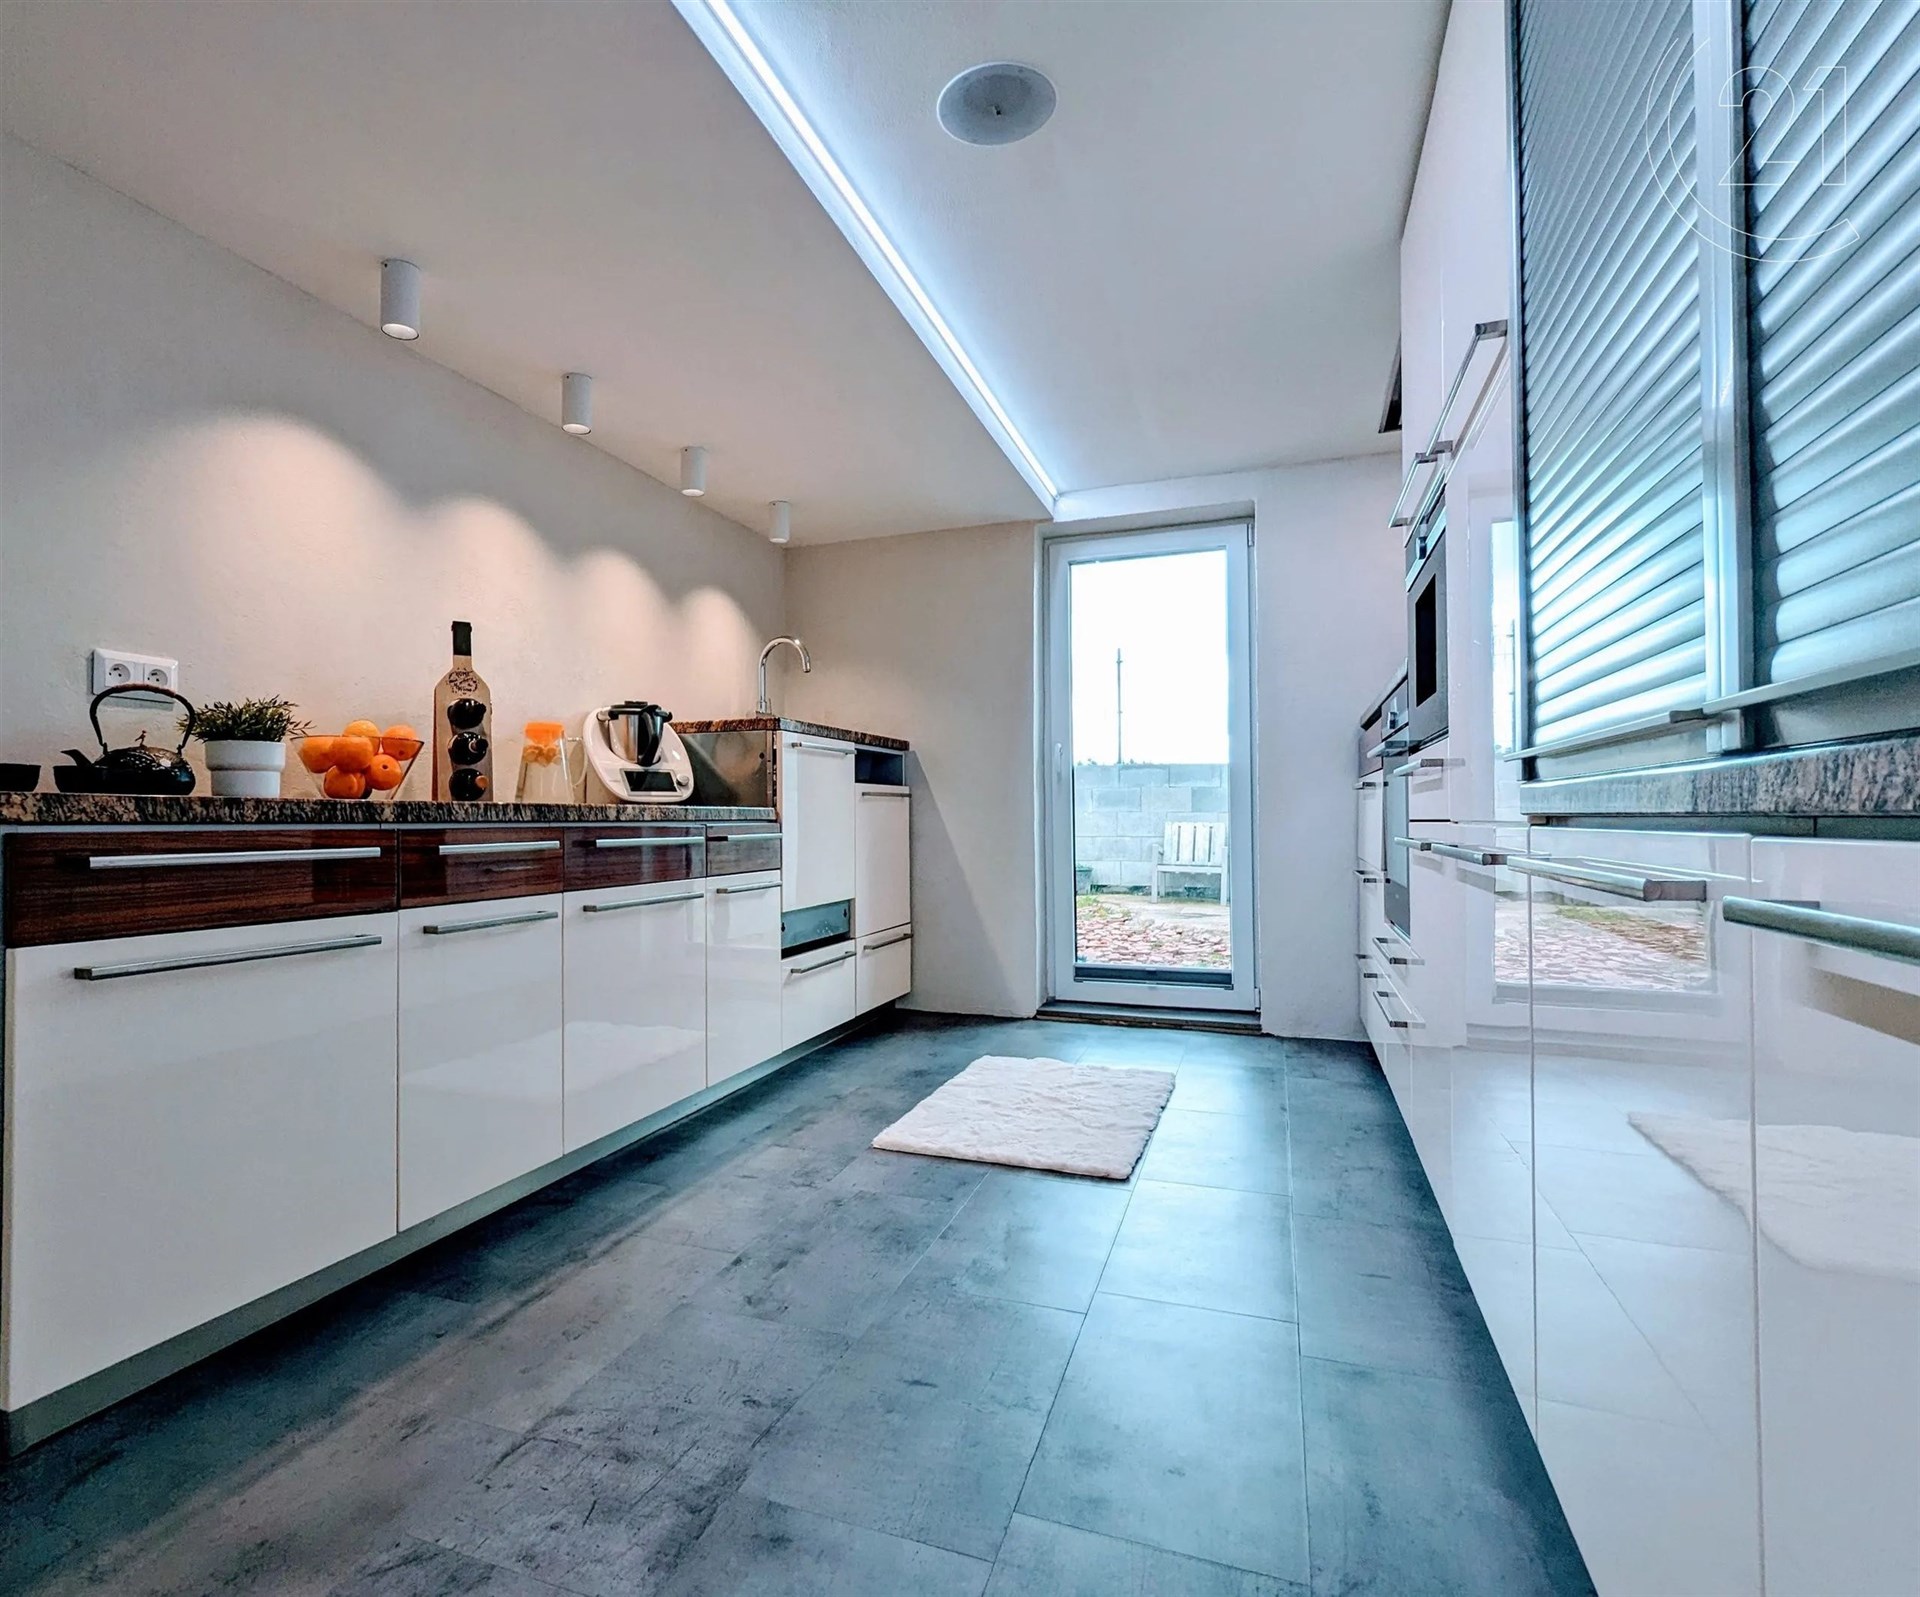 kuchyně s přirozené světlo, kachličková podlaha, bílé skříně, trouba, a ploché panelové skříňky